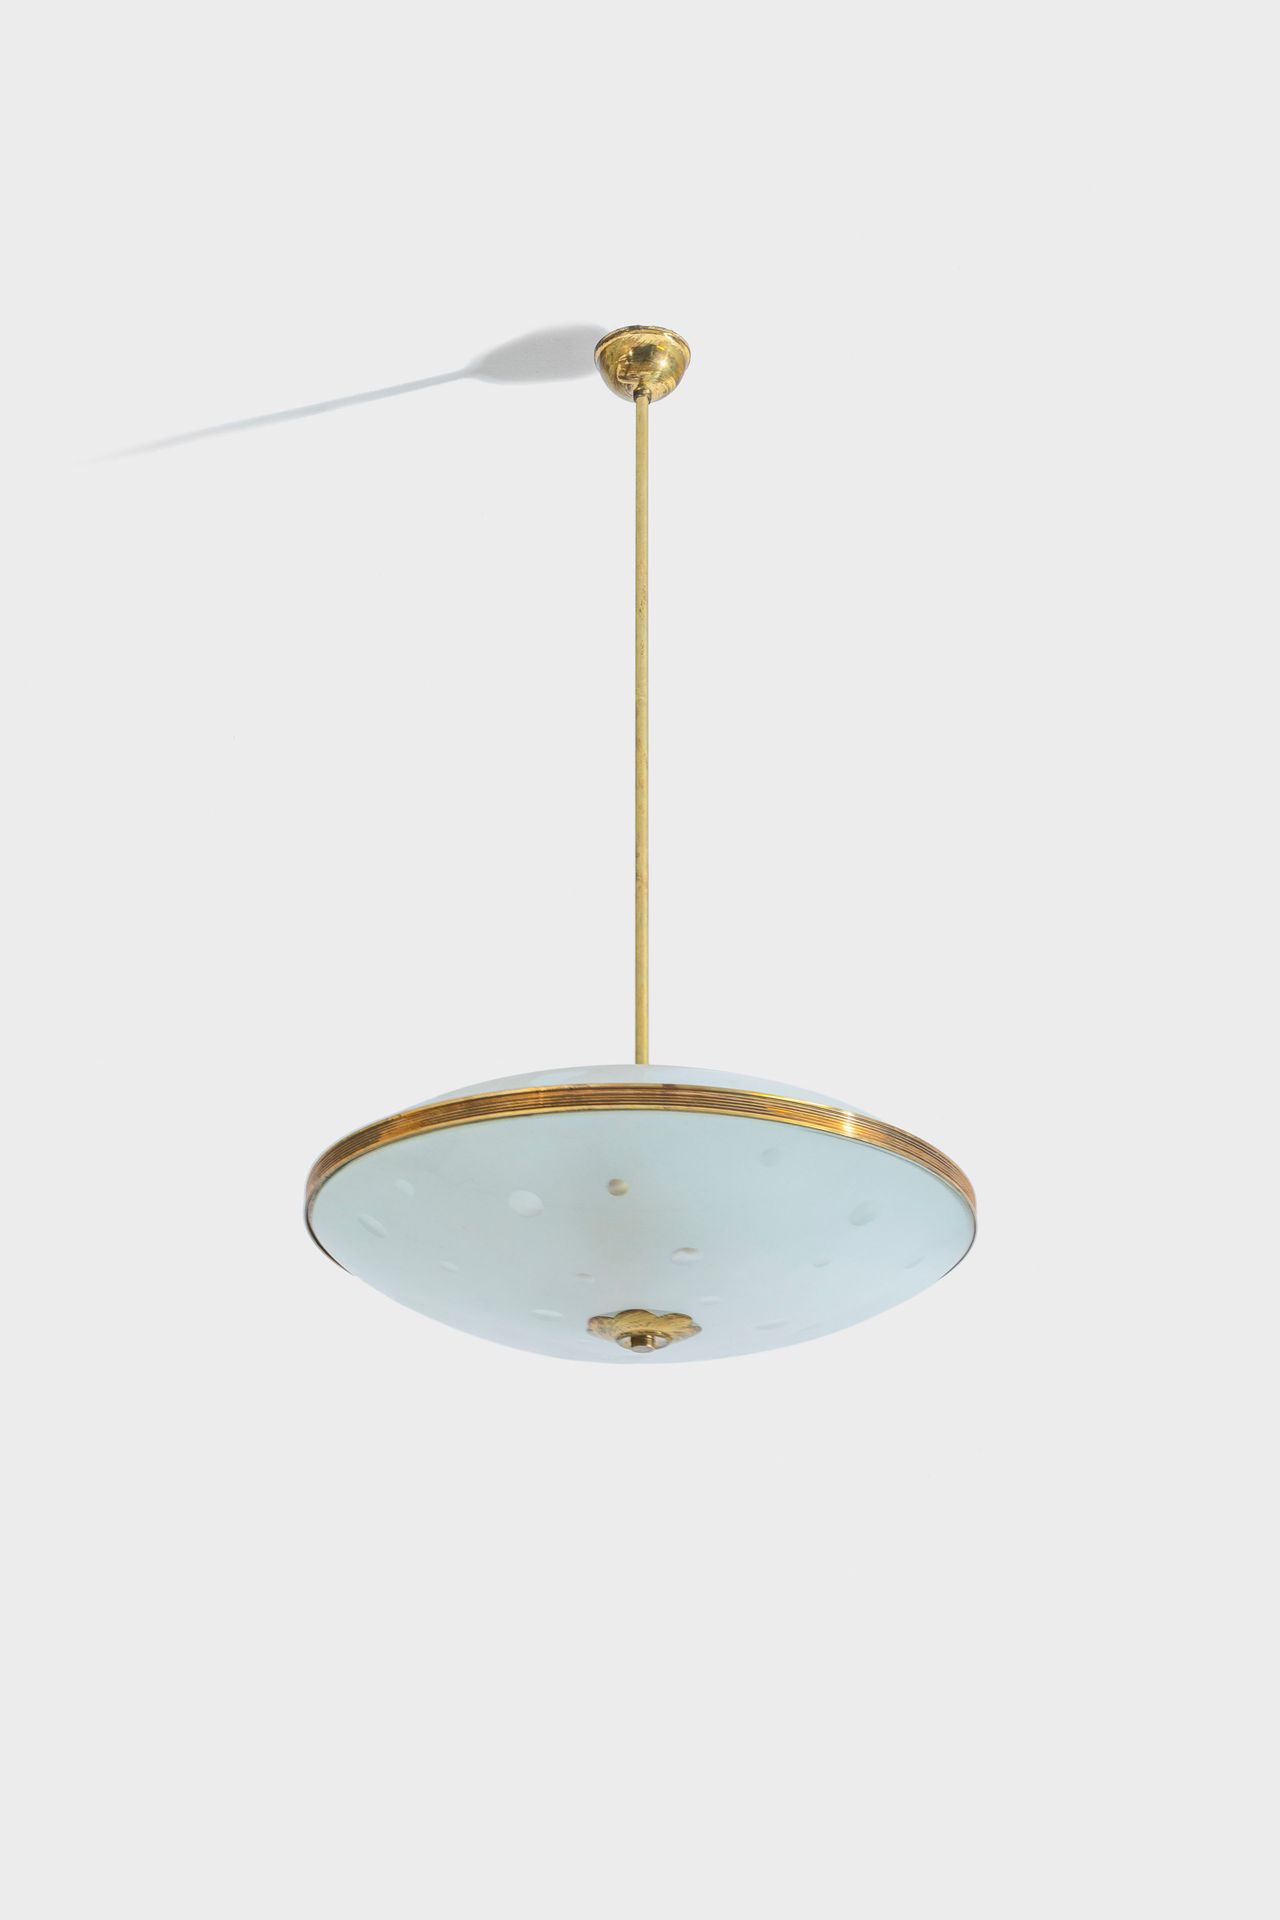 MANIFATTURA ITALIANA 枝形吊灯。黄铜，弯曲和喷砂玻璃。1950s. 
82x48x48厘米
一个意大利的天花板灯 



状况良好，有小的线&hellip;